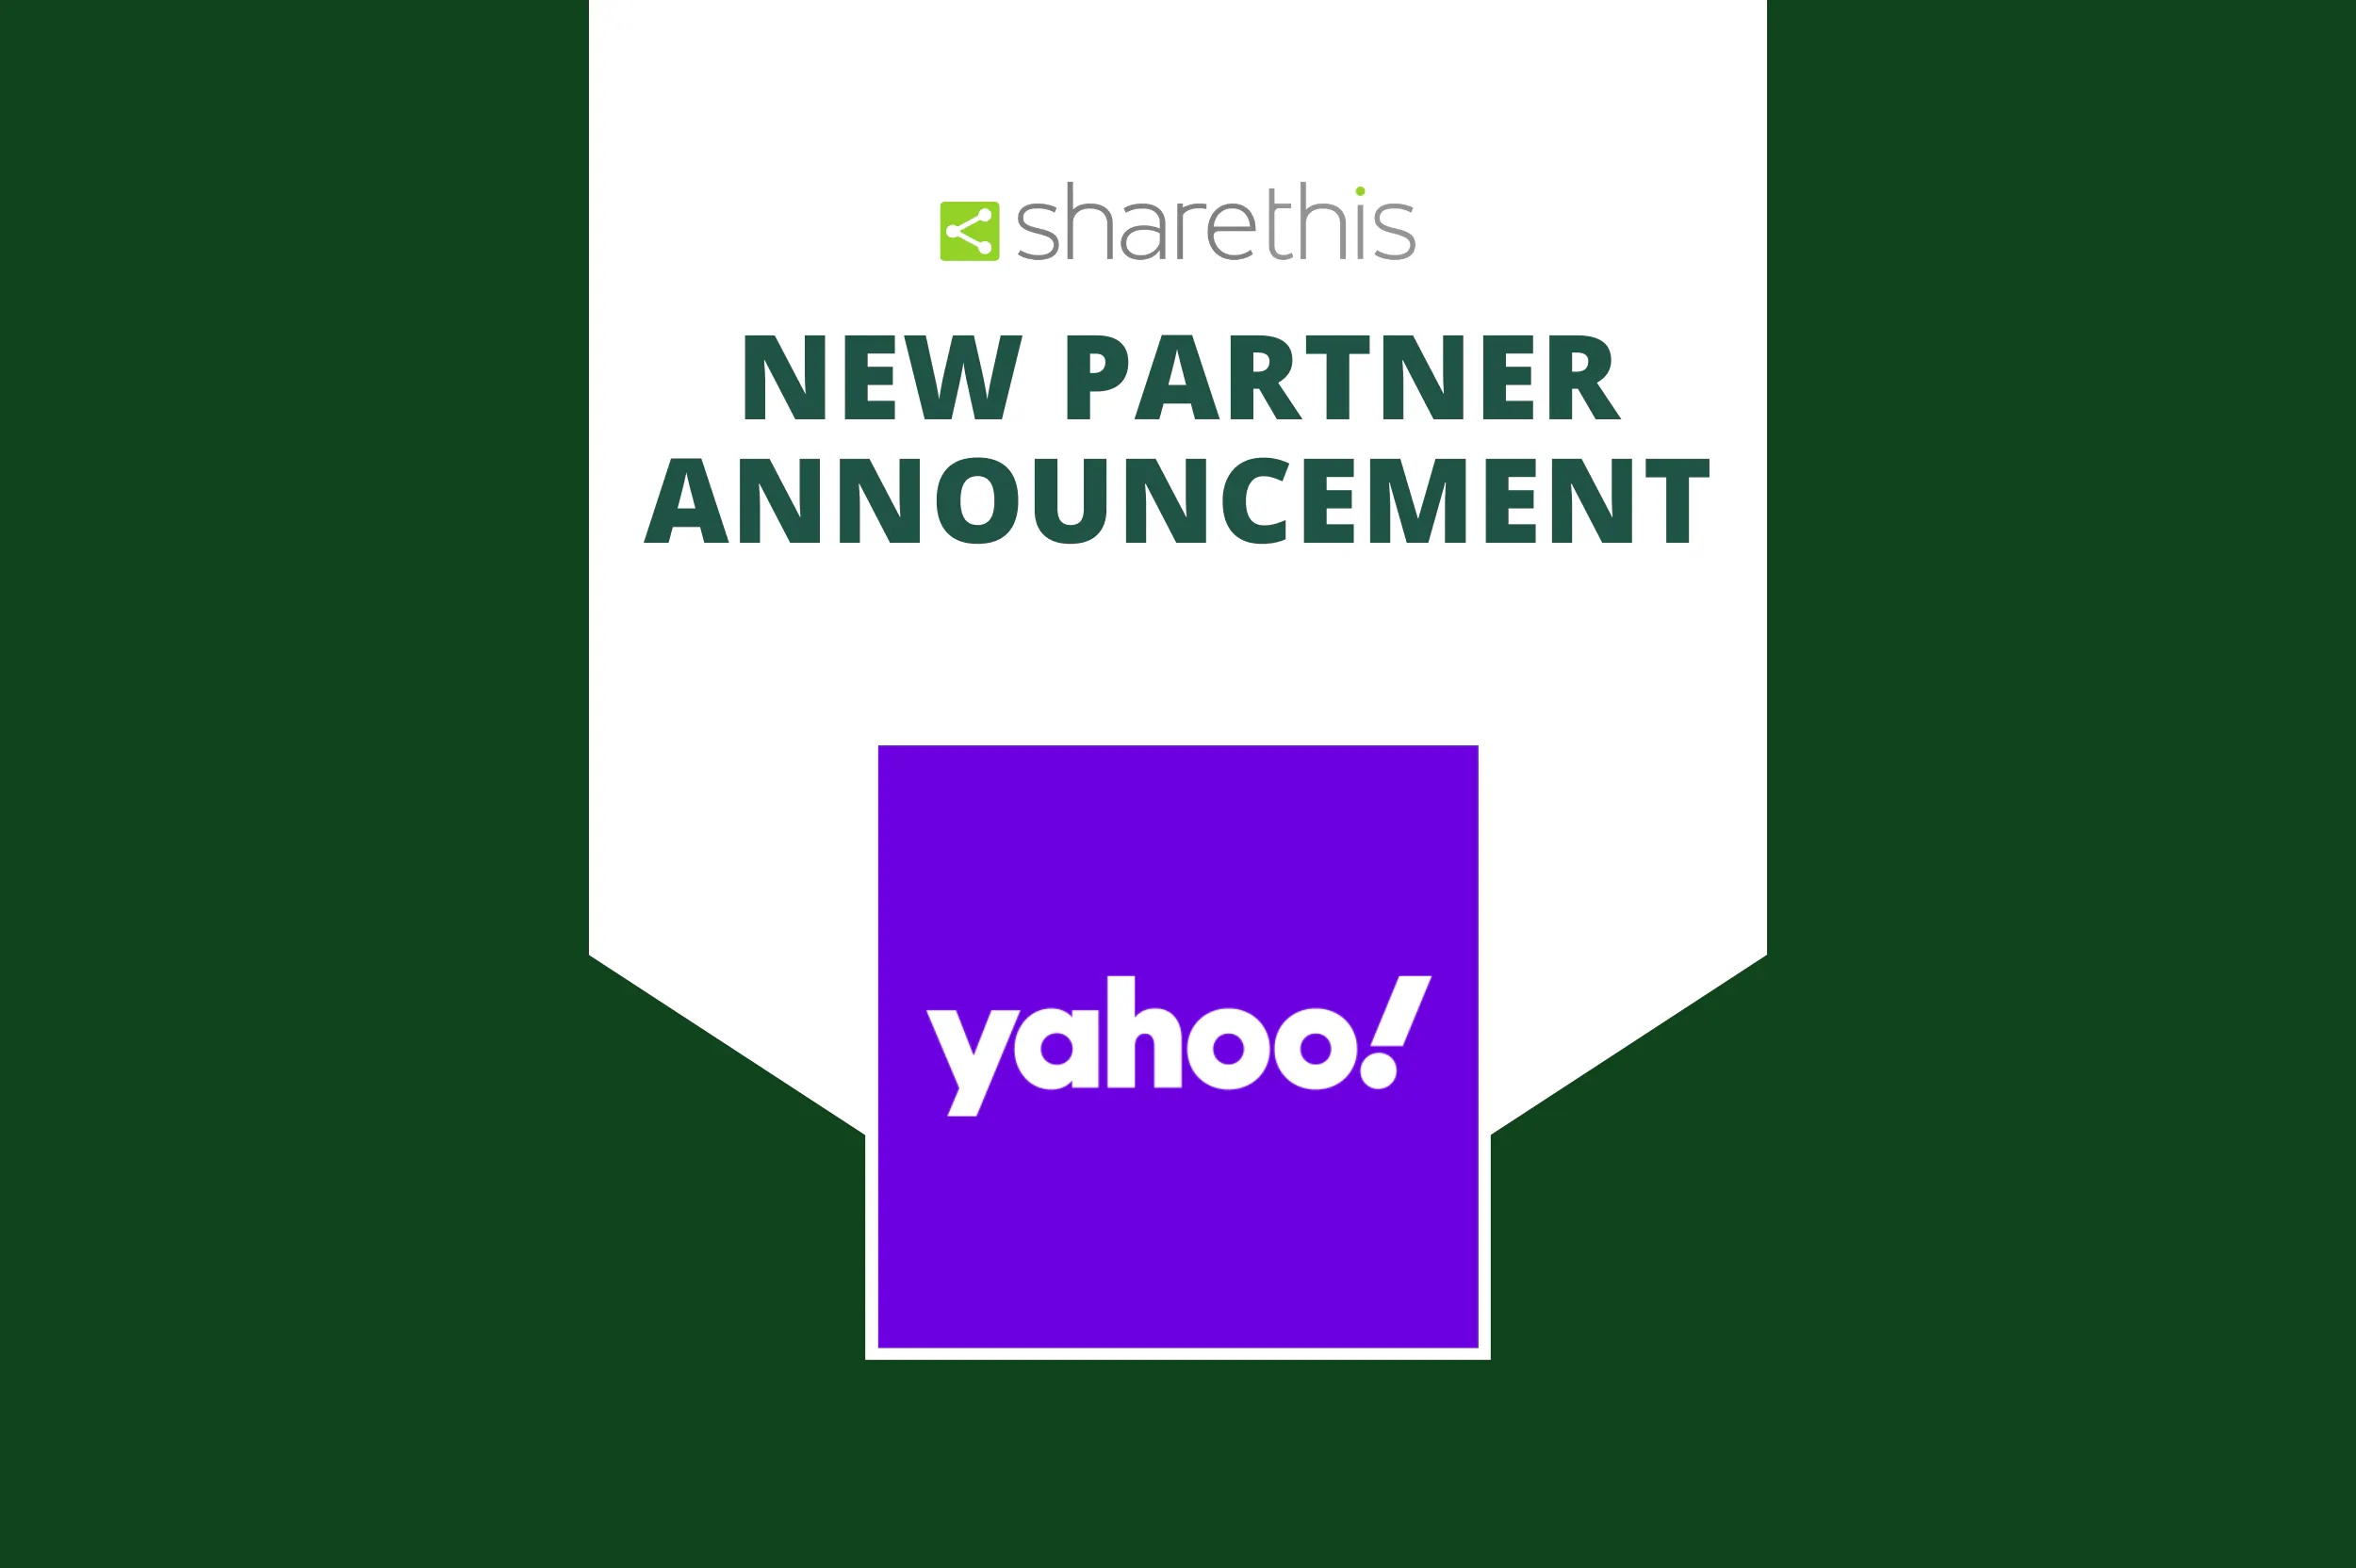 Yahoo ConnectIDとの新たなパートナーシップ締結のお知らせ